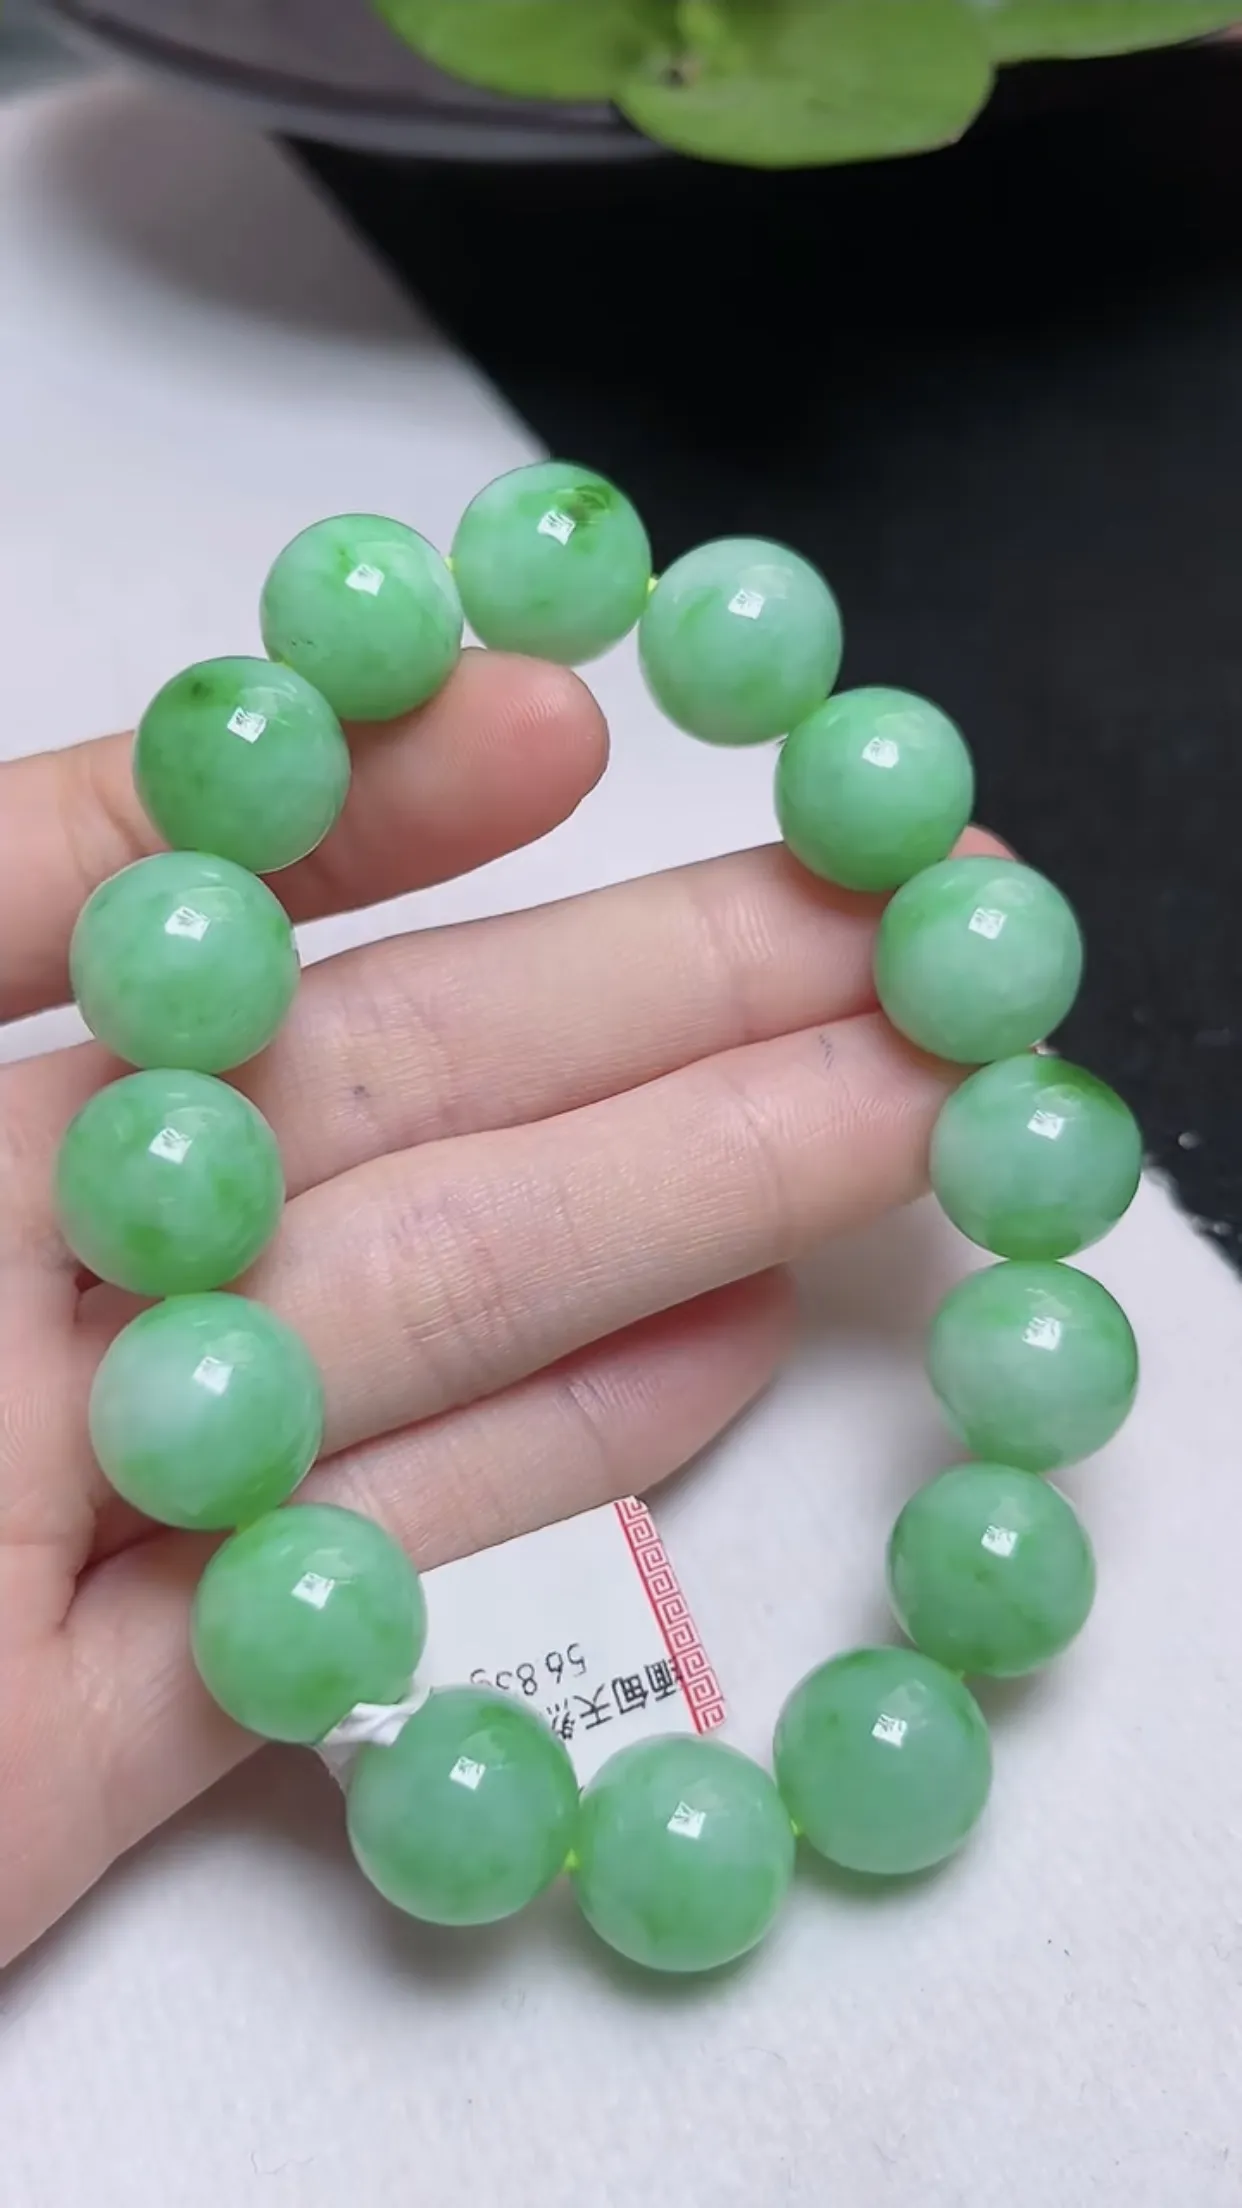 缅甸玉天然翡翠A货 老坑料起胶冰润 绿色圆珠手链 手串  尺寸：12.8mm   y56.83